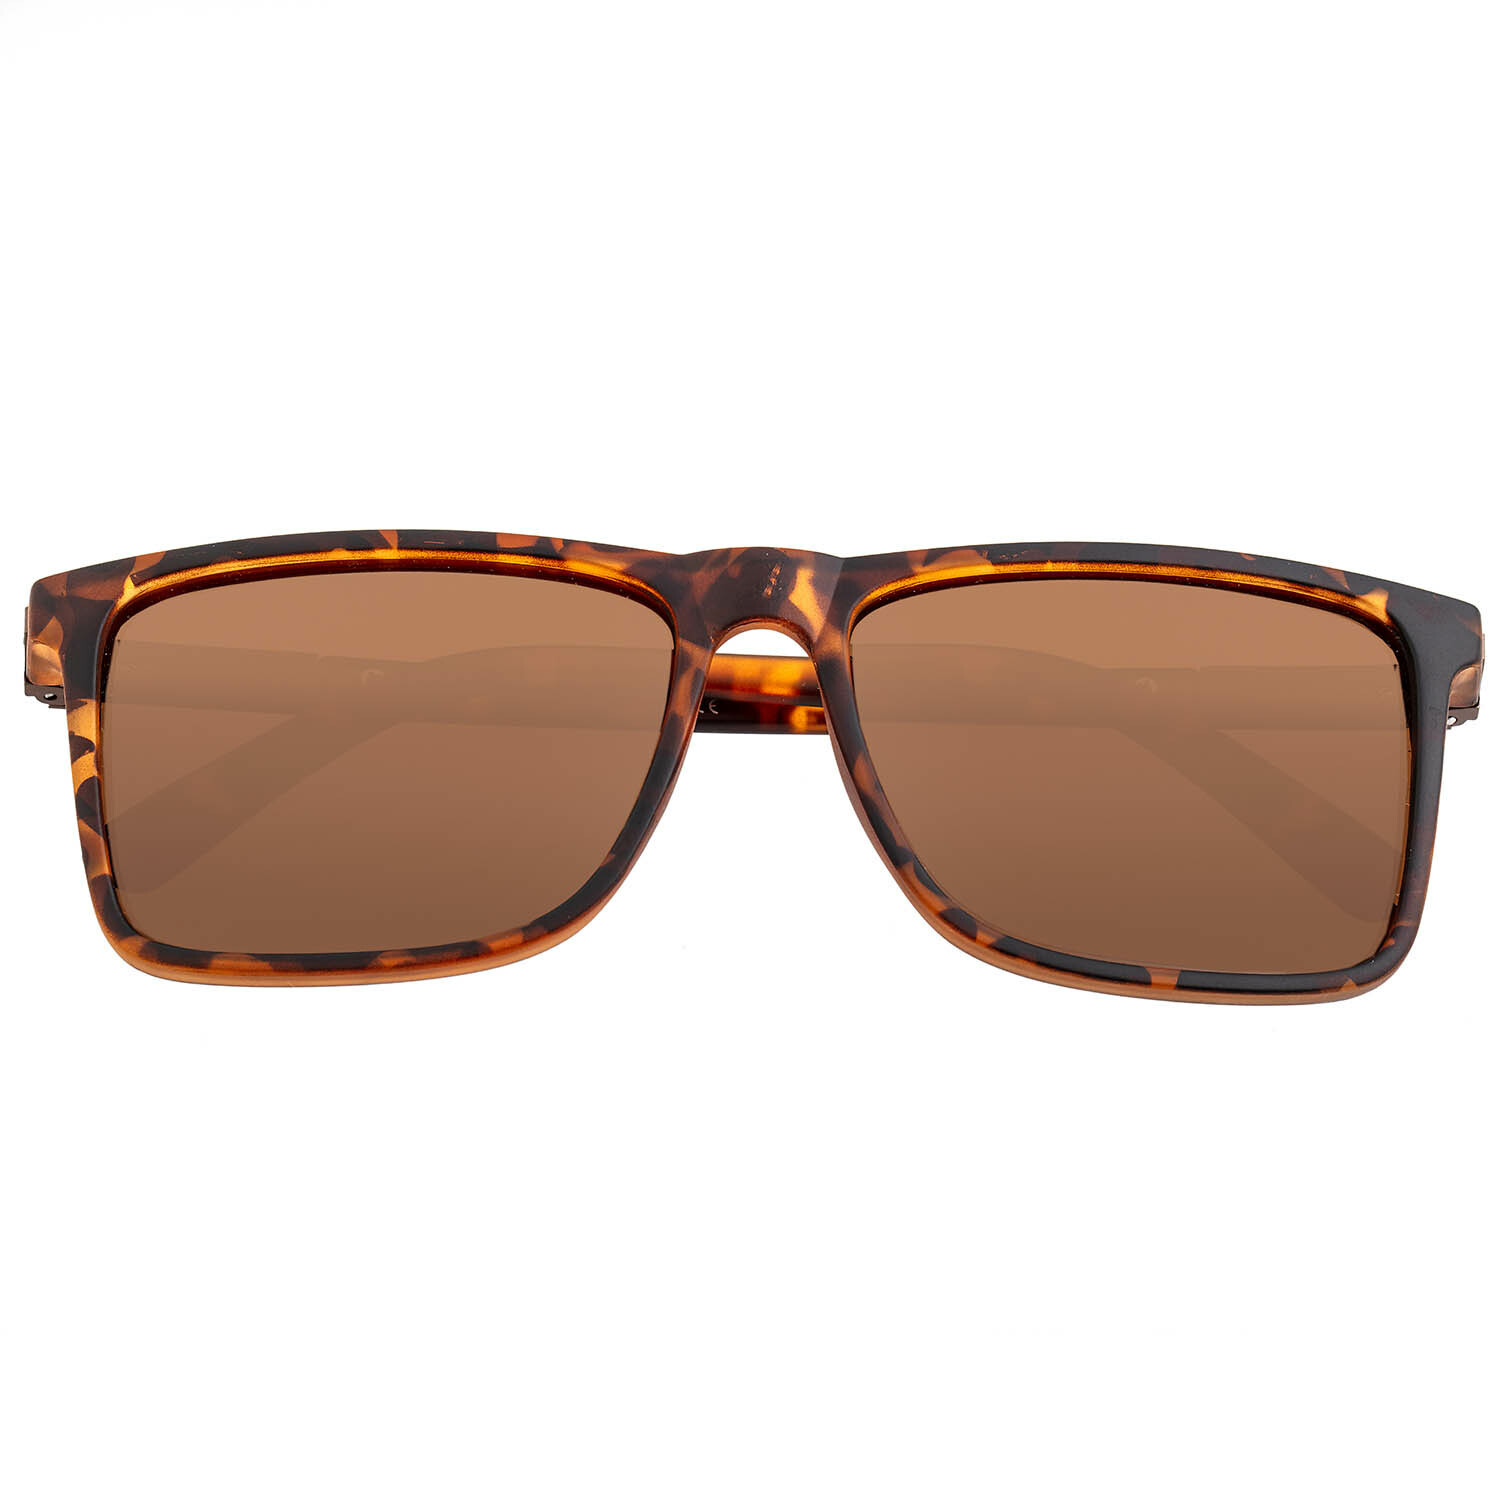 Caelum Polarized Sunglasses // Tortoise Frame + Brown Lens - Breed ...